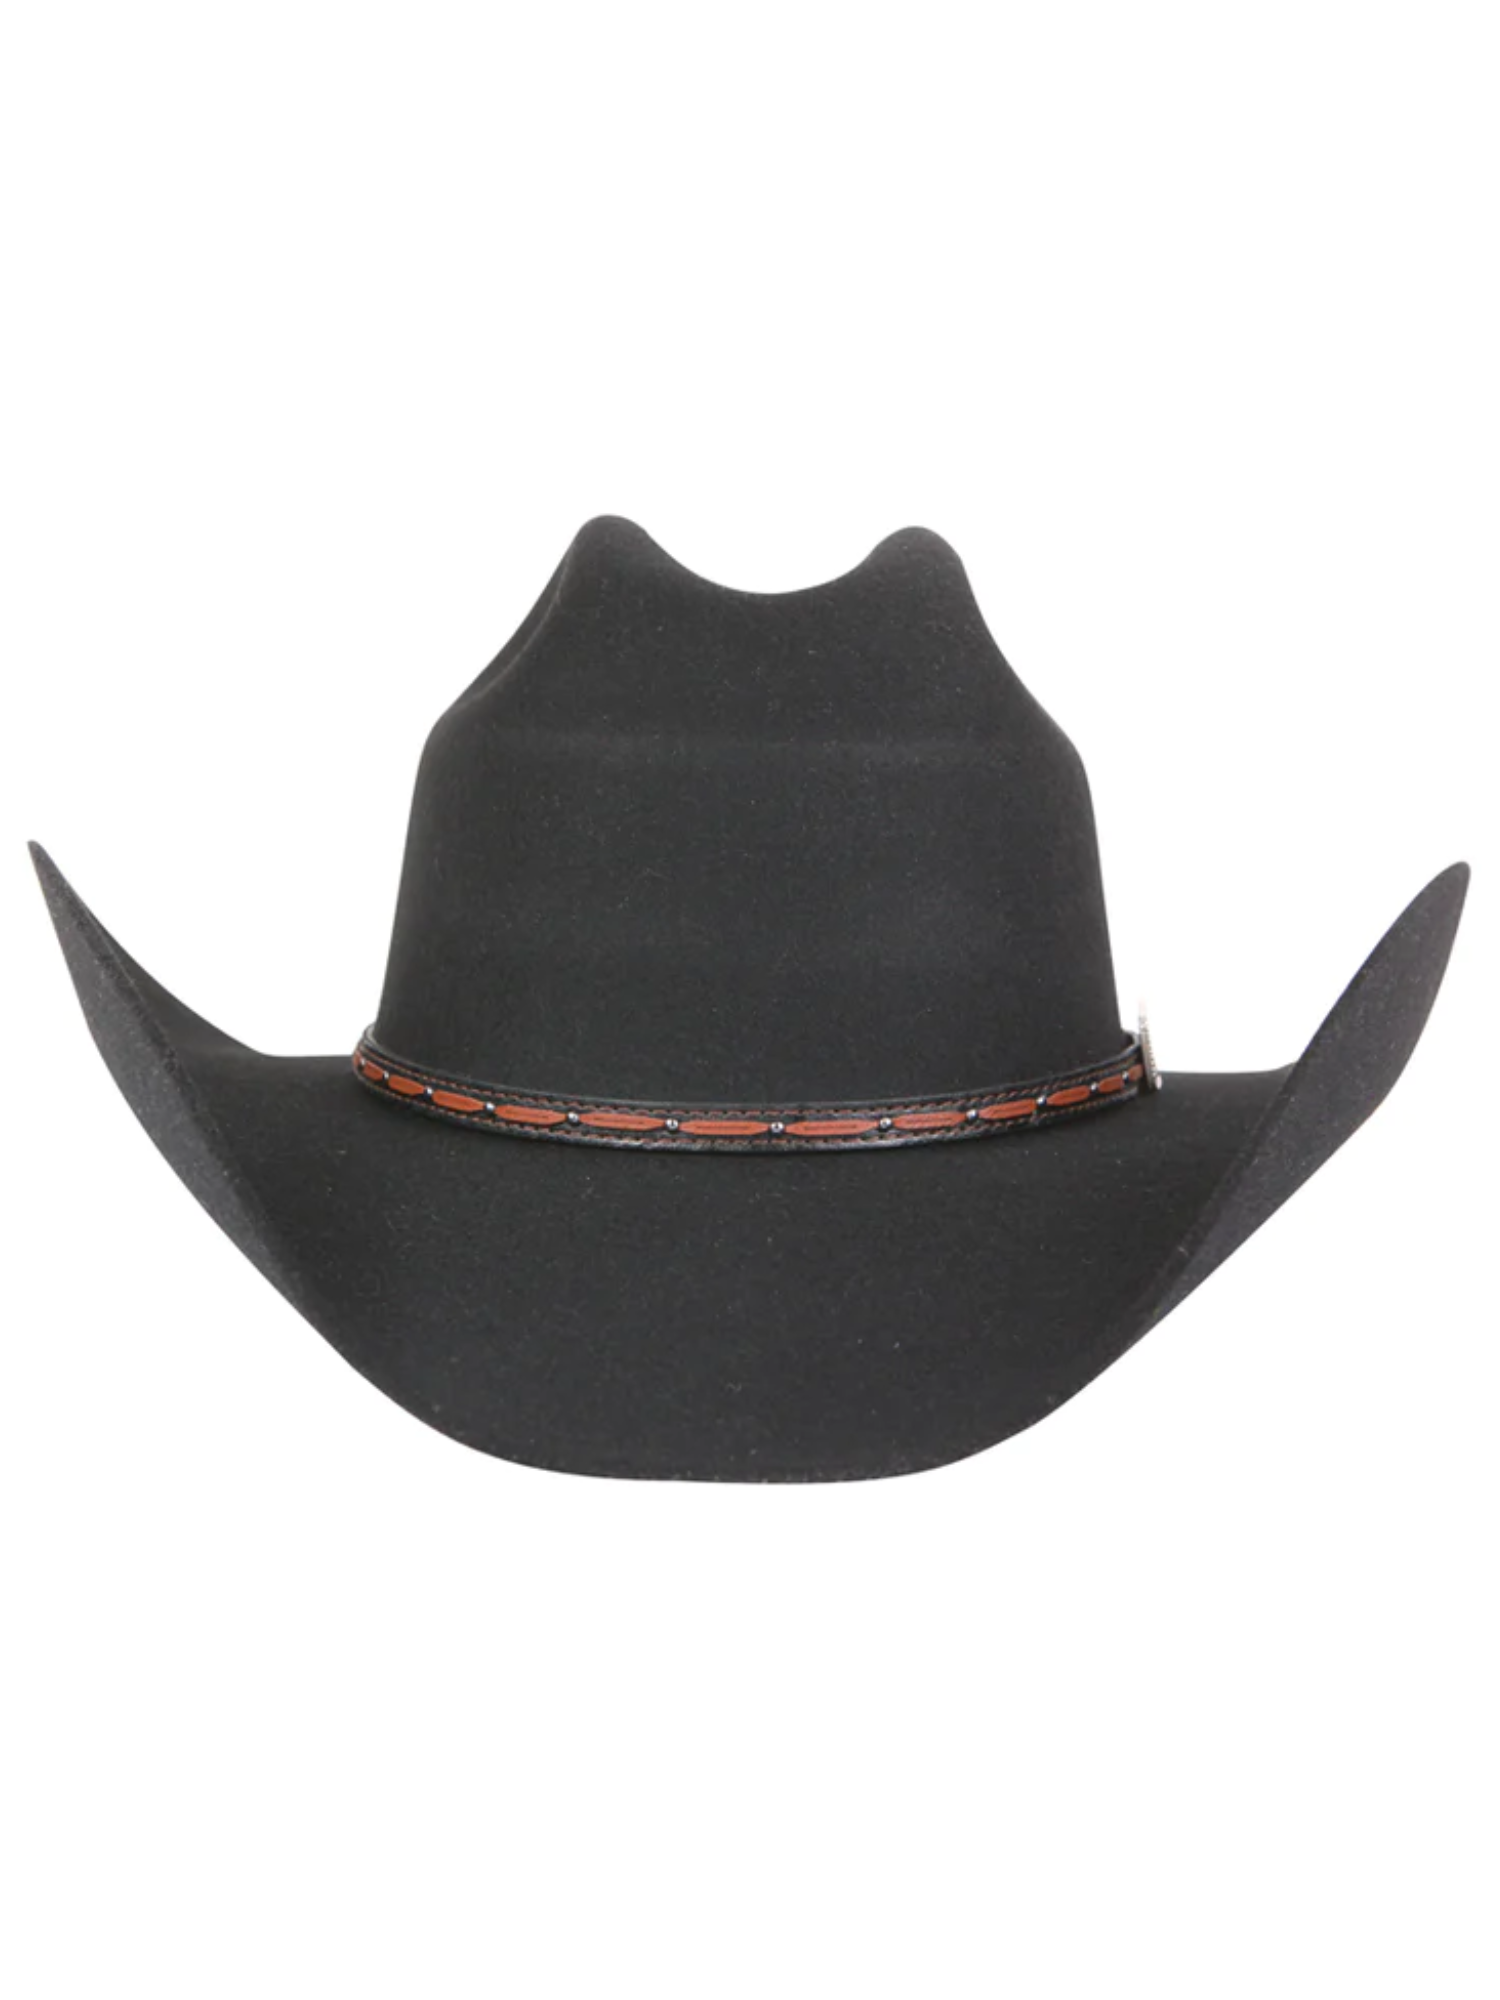 Texana Horma Rebeka 50X Lana para Hombre 'El Señor de los Cielos' - ID: 41675 Cowboy Hat El Señor de los Cielos 